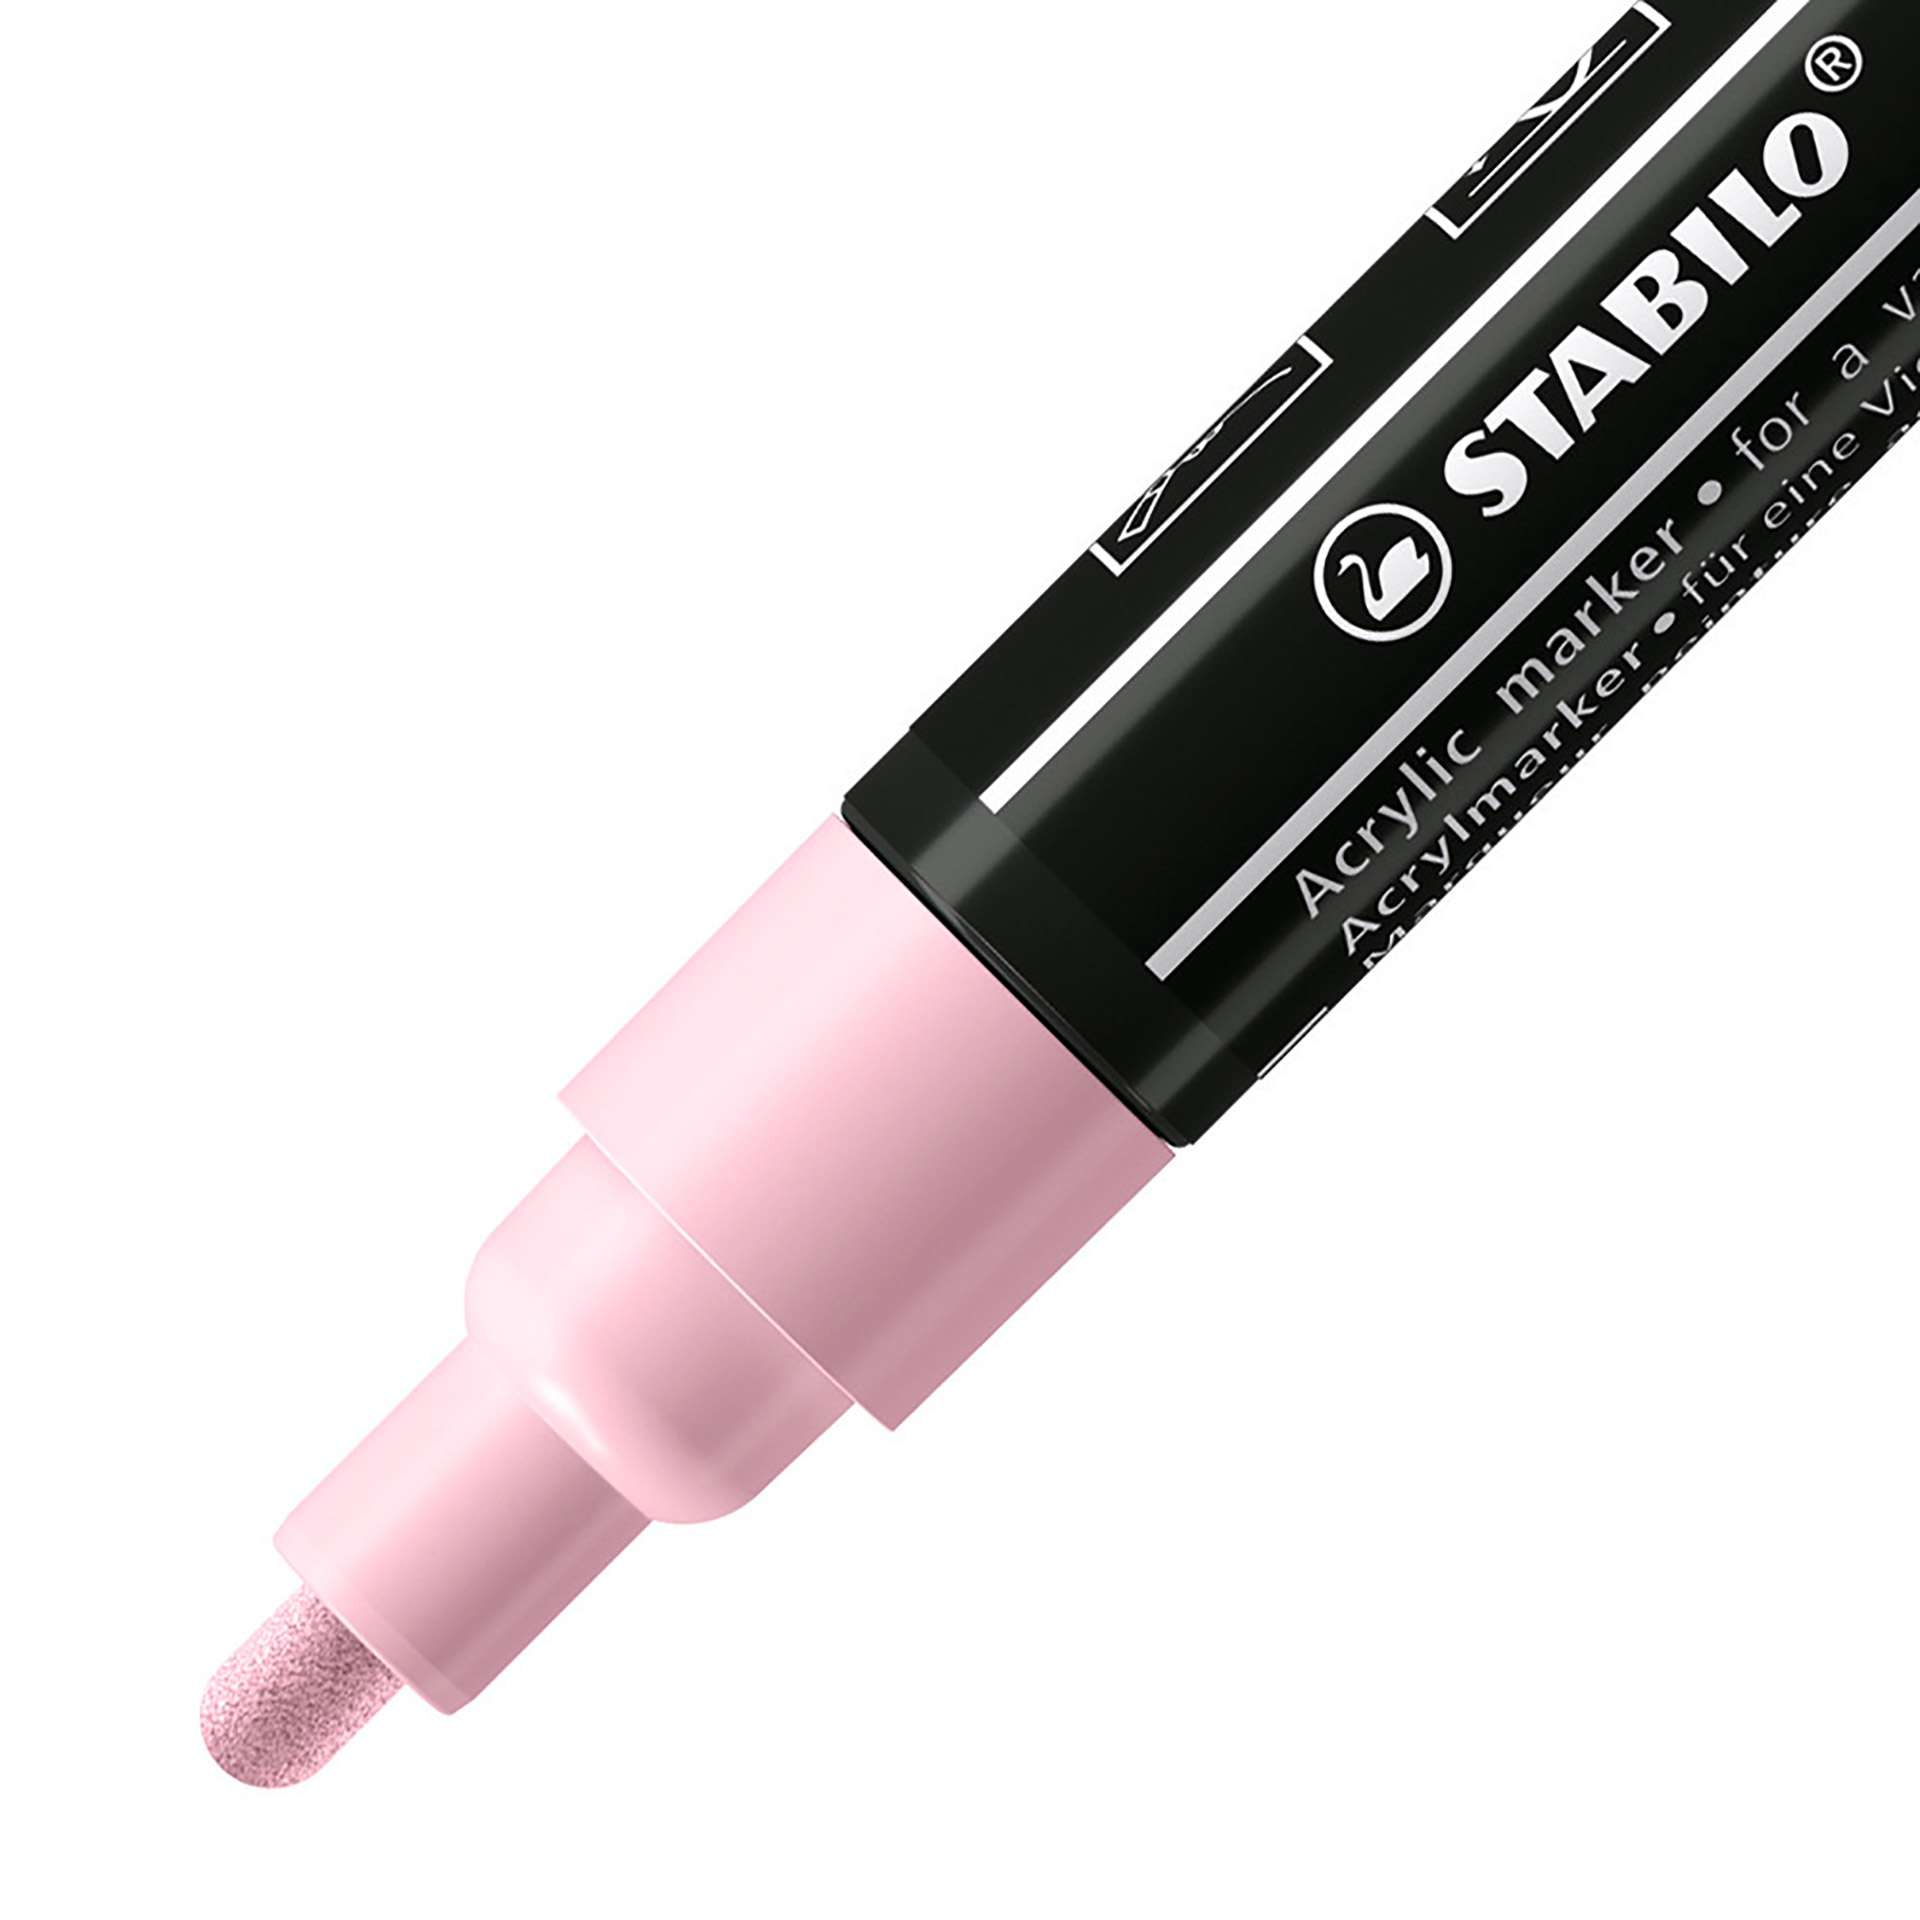 STABILO FREE Acrylic - T300 Punta rotonda 2-3mm - Confezione da 5 - Rosa antico, , large